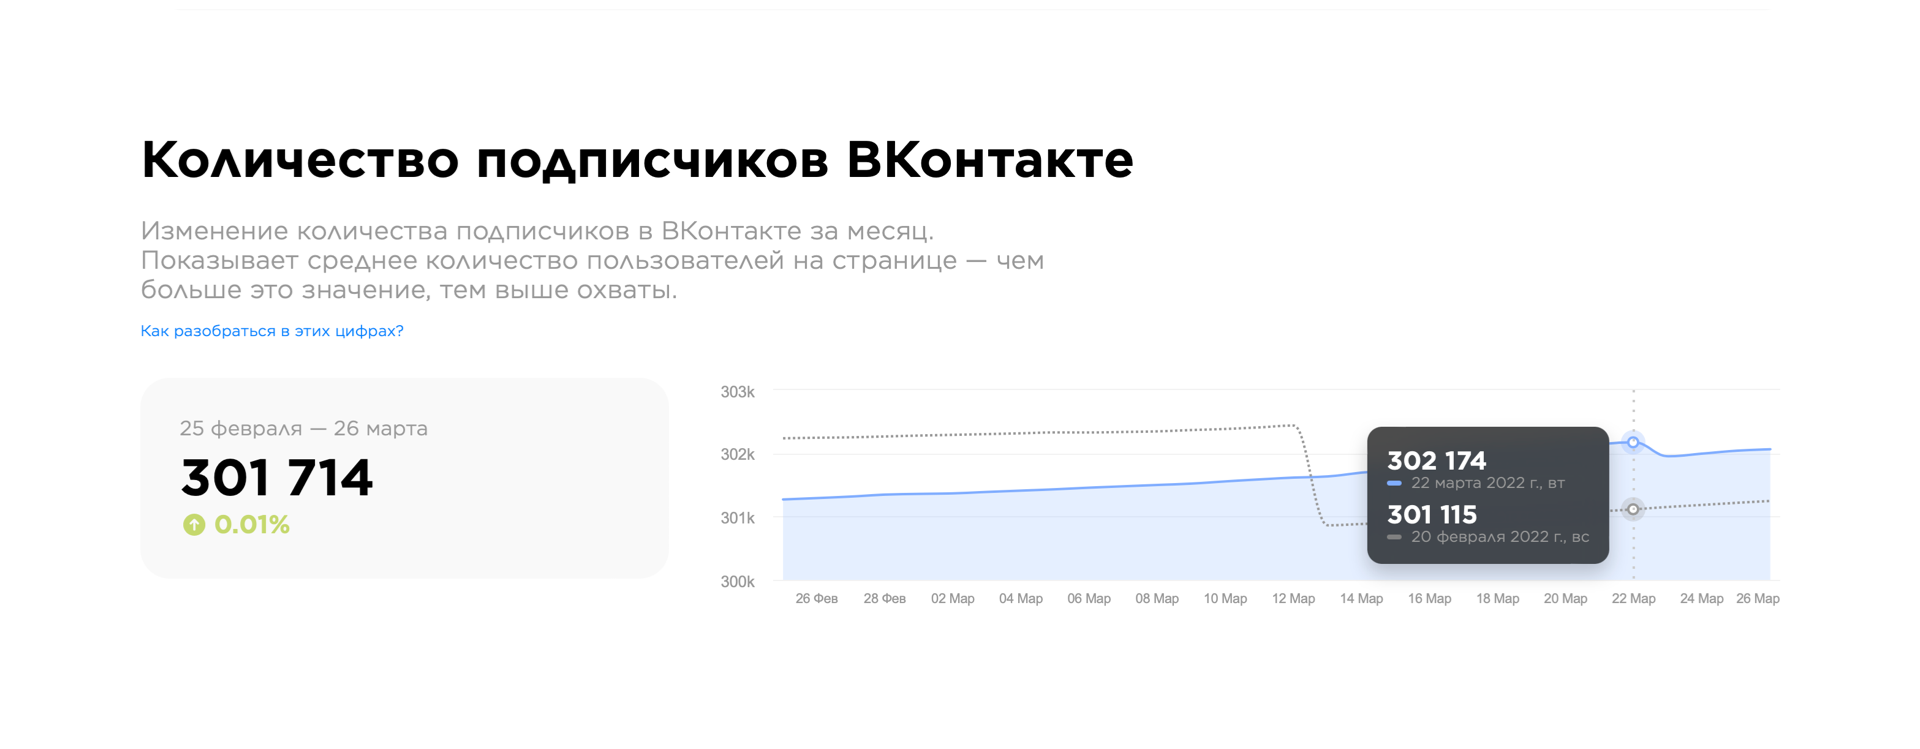 Количество подписчиков ВКонтакте